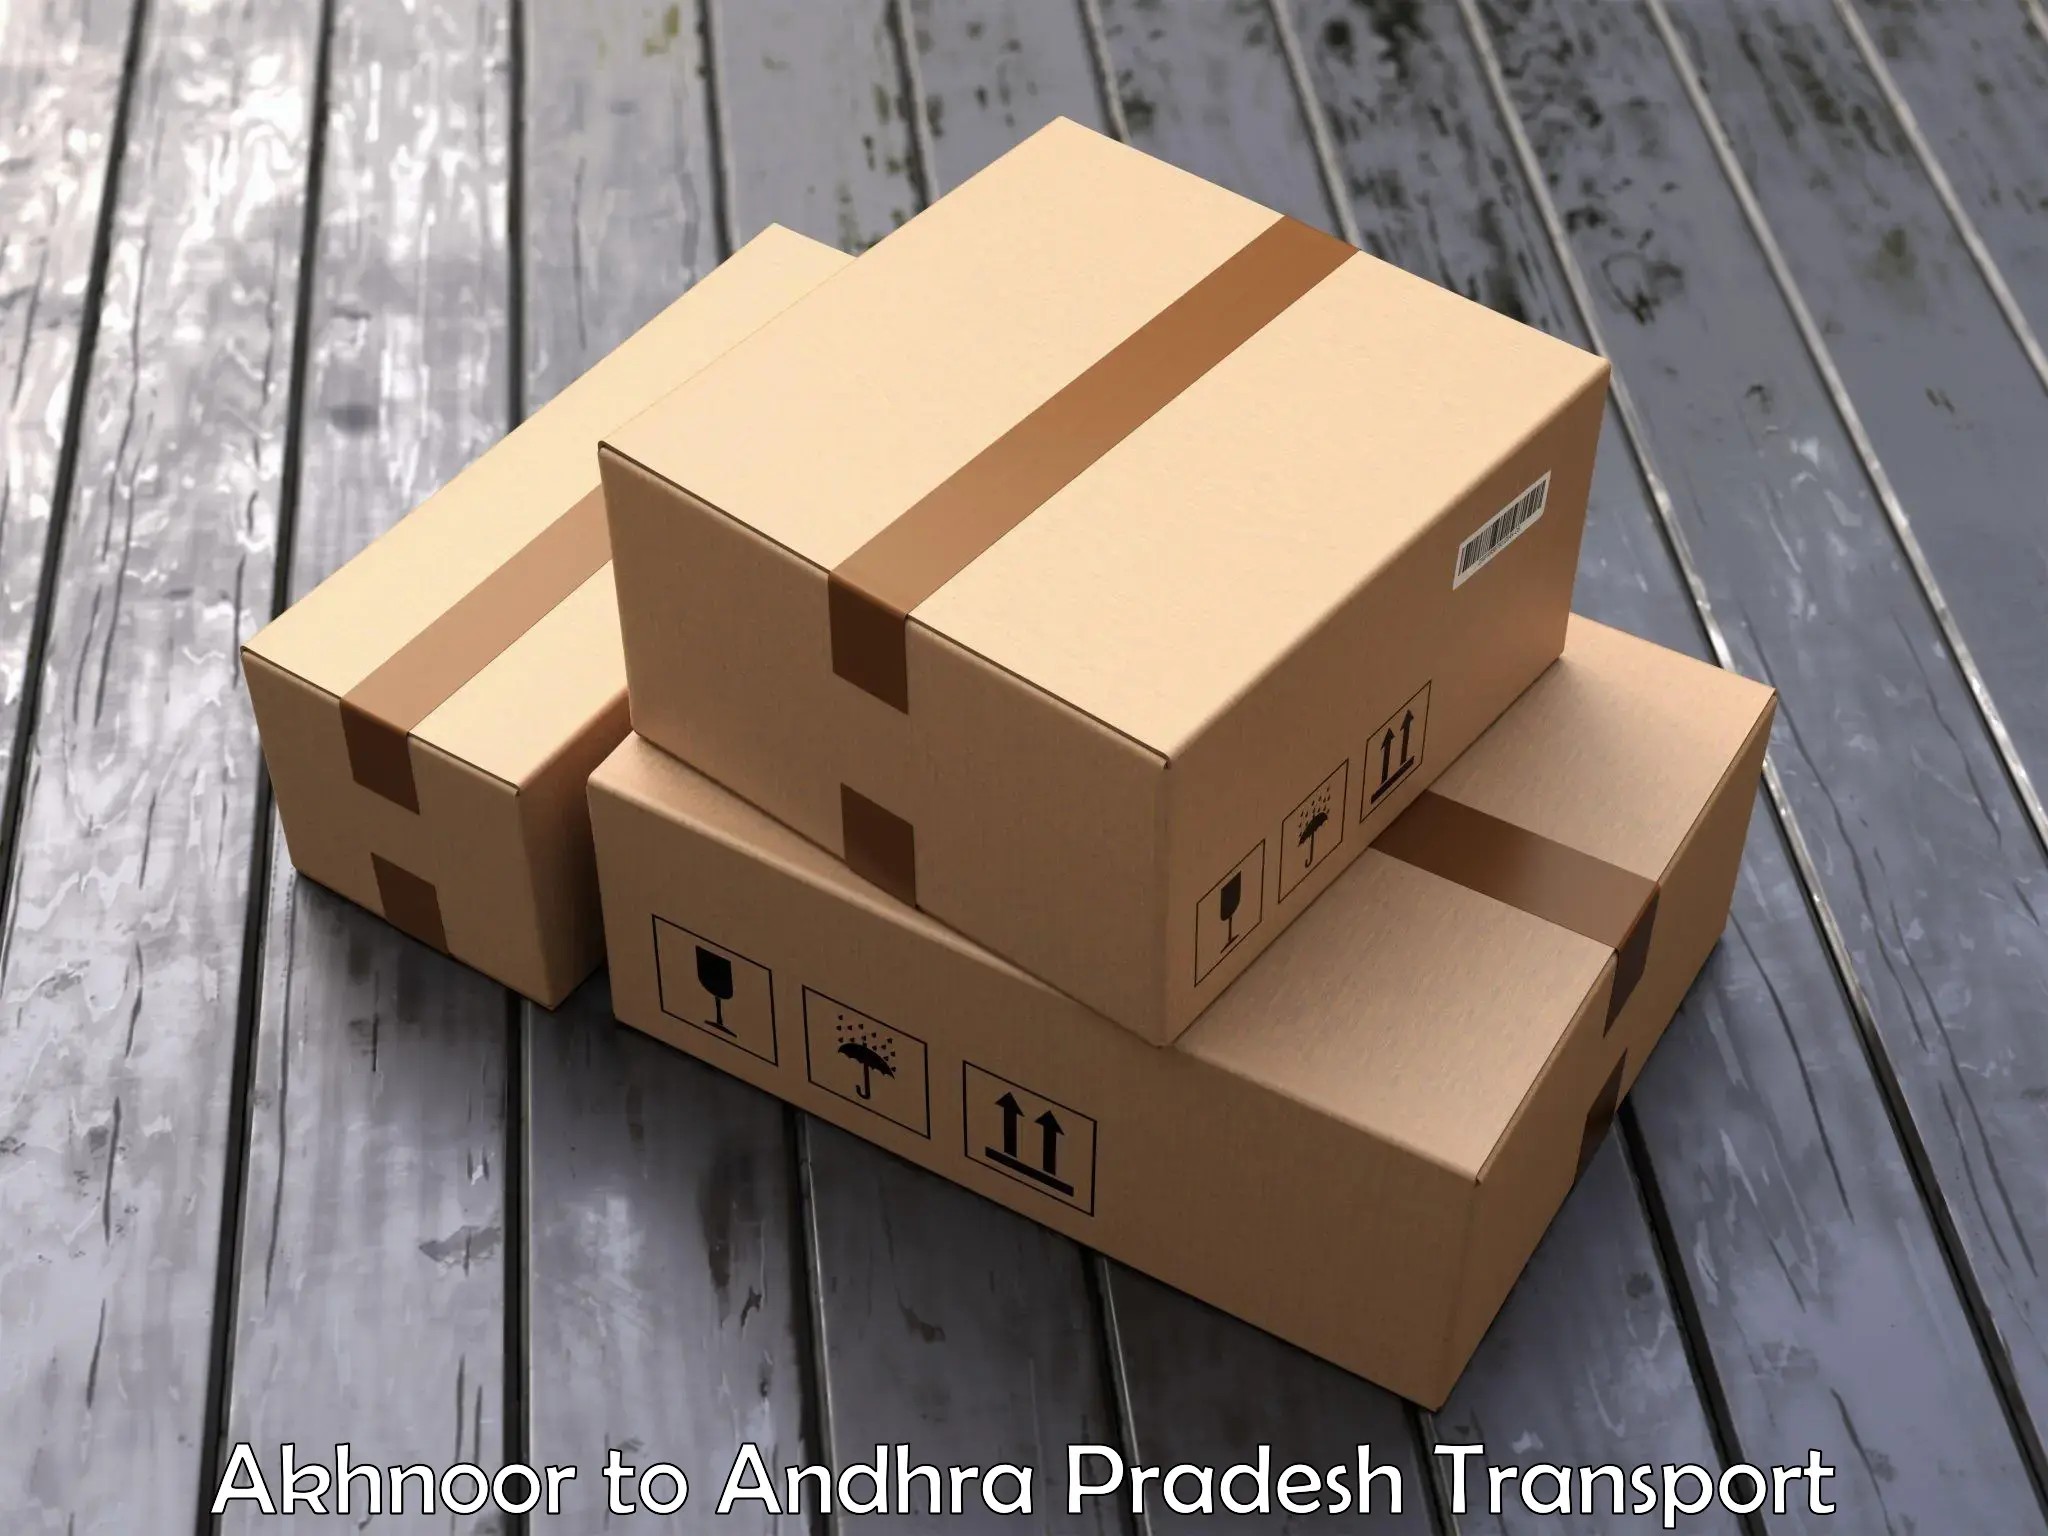 Daily parcel service transport Akhnoor to Amadalavalasa